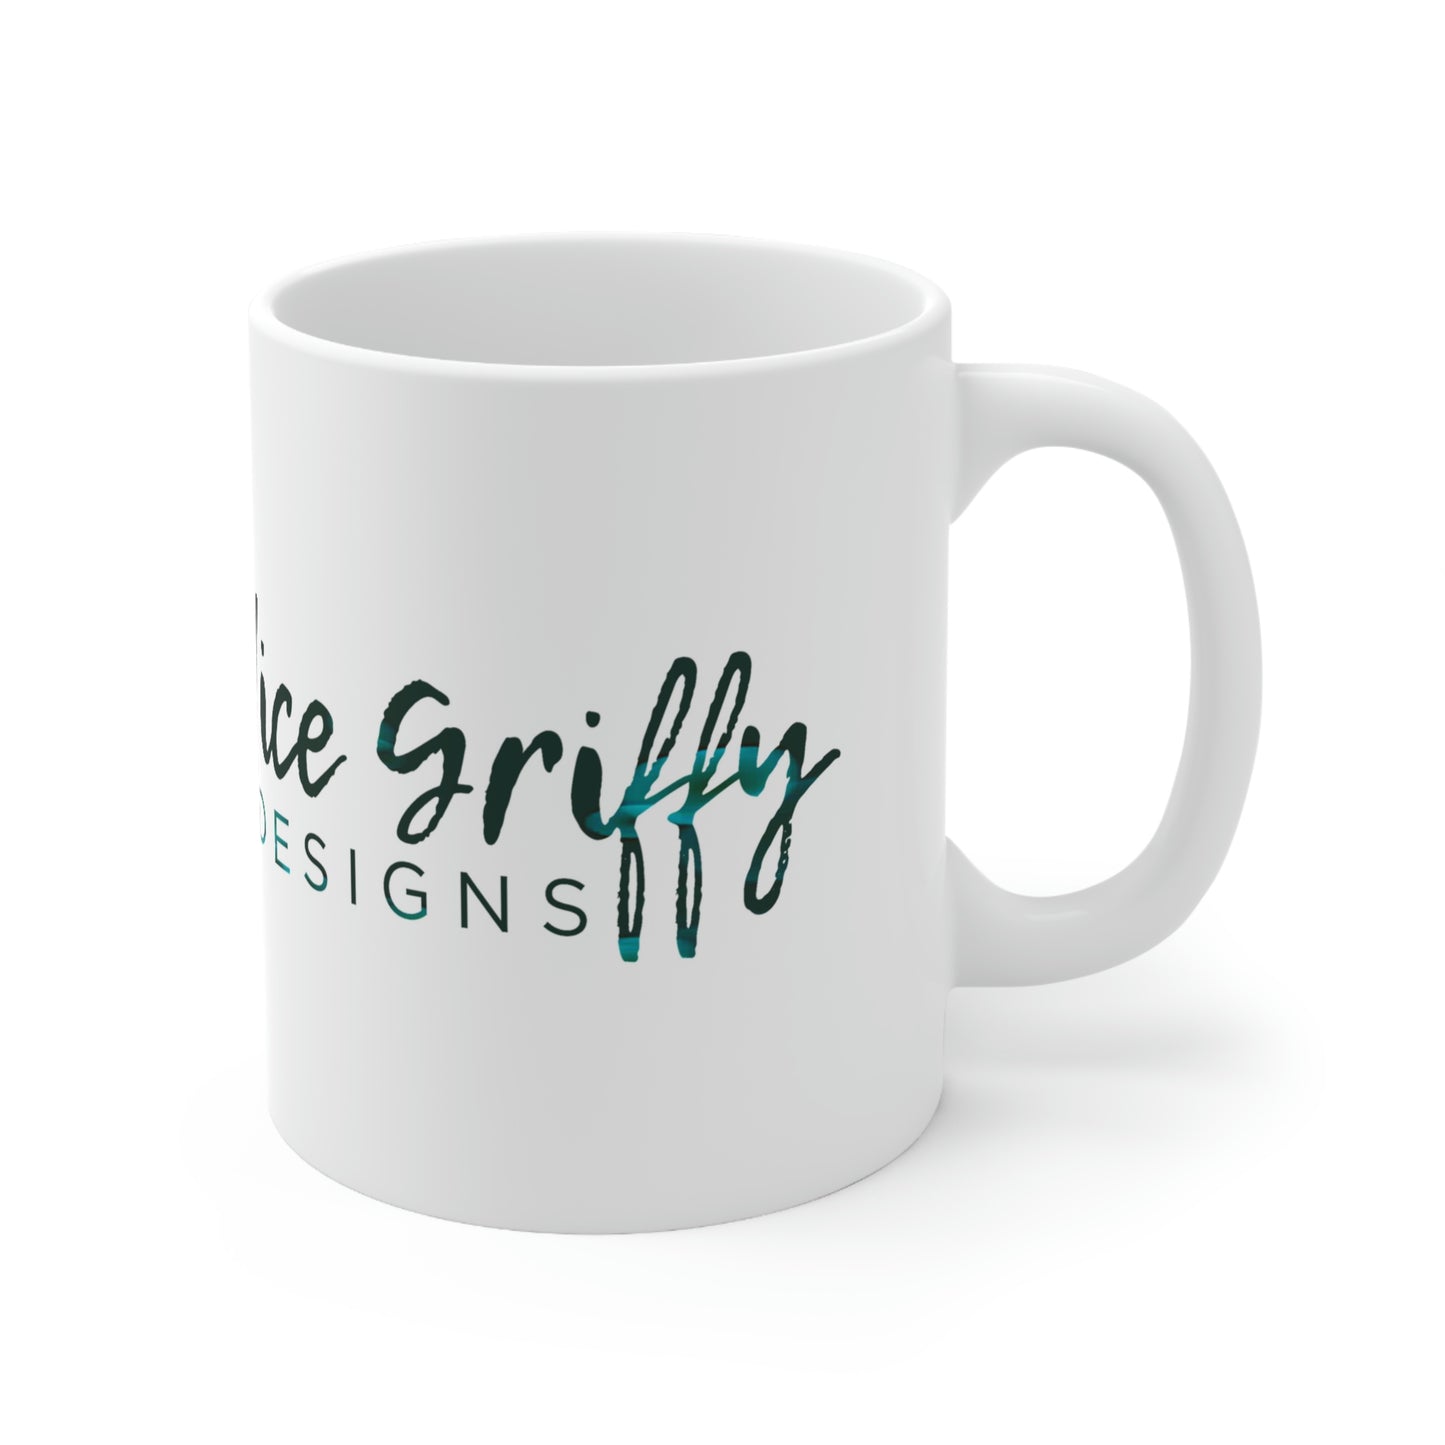 Candice Griffy Designs Wide Logo Ceramic Mug 11oz